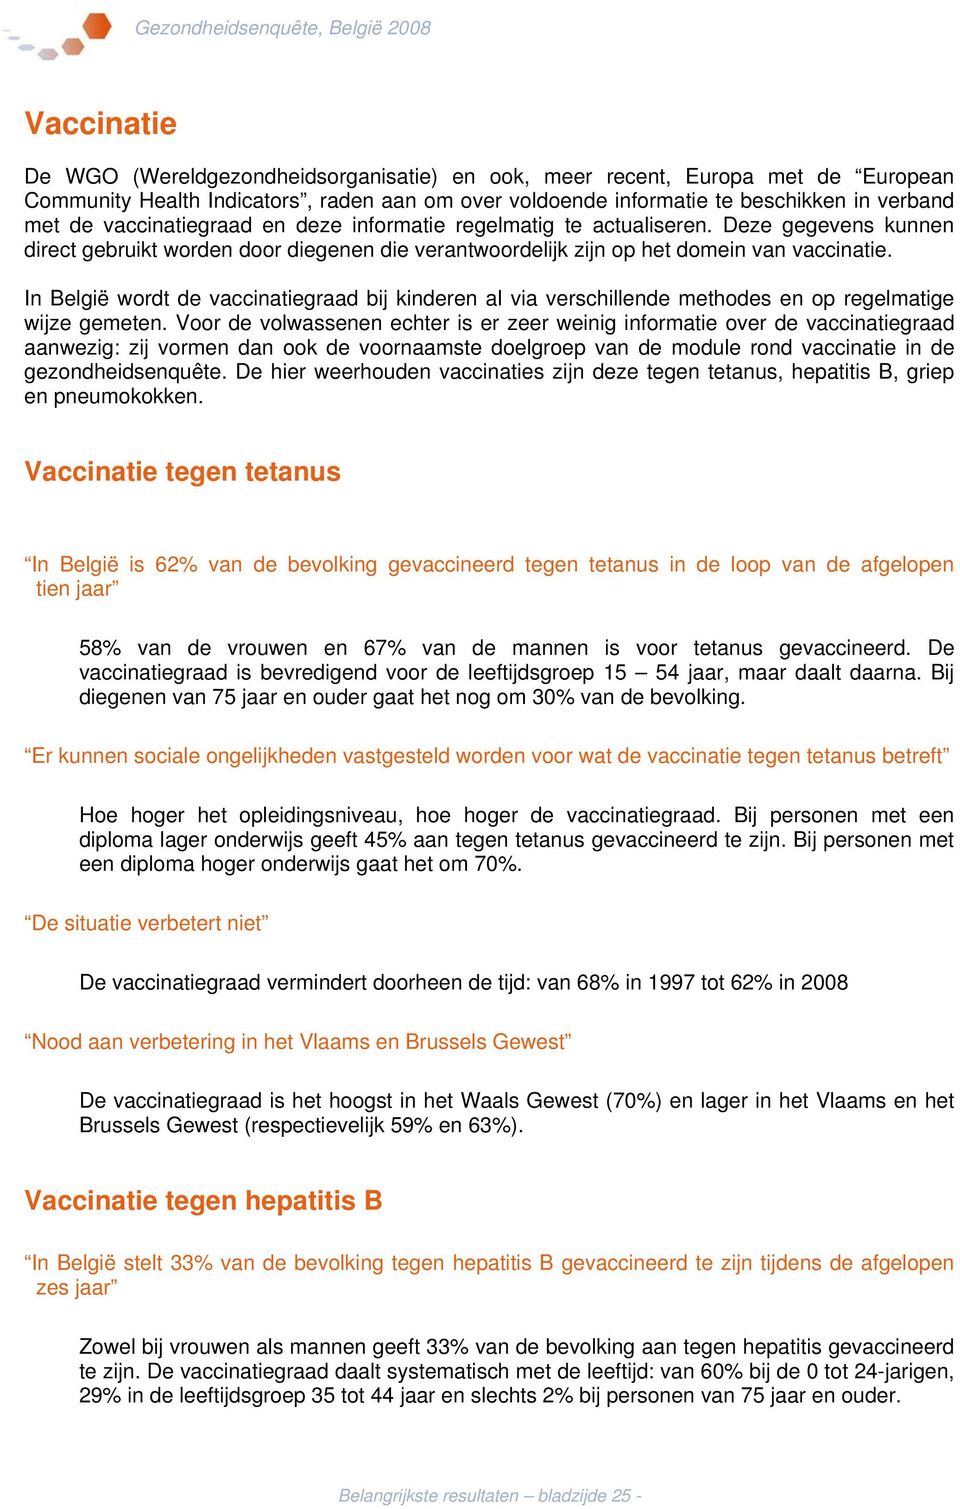 In België wordt de vaccinatiegraad bij kinderen al via verschillende methodes en op regelmatige wijze gemeten.